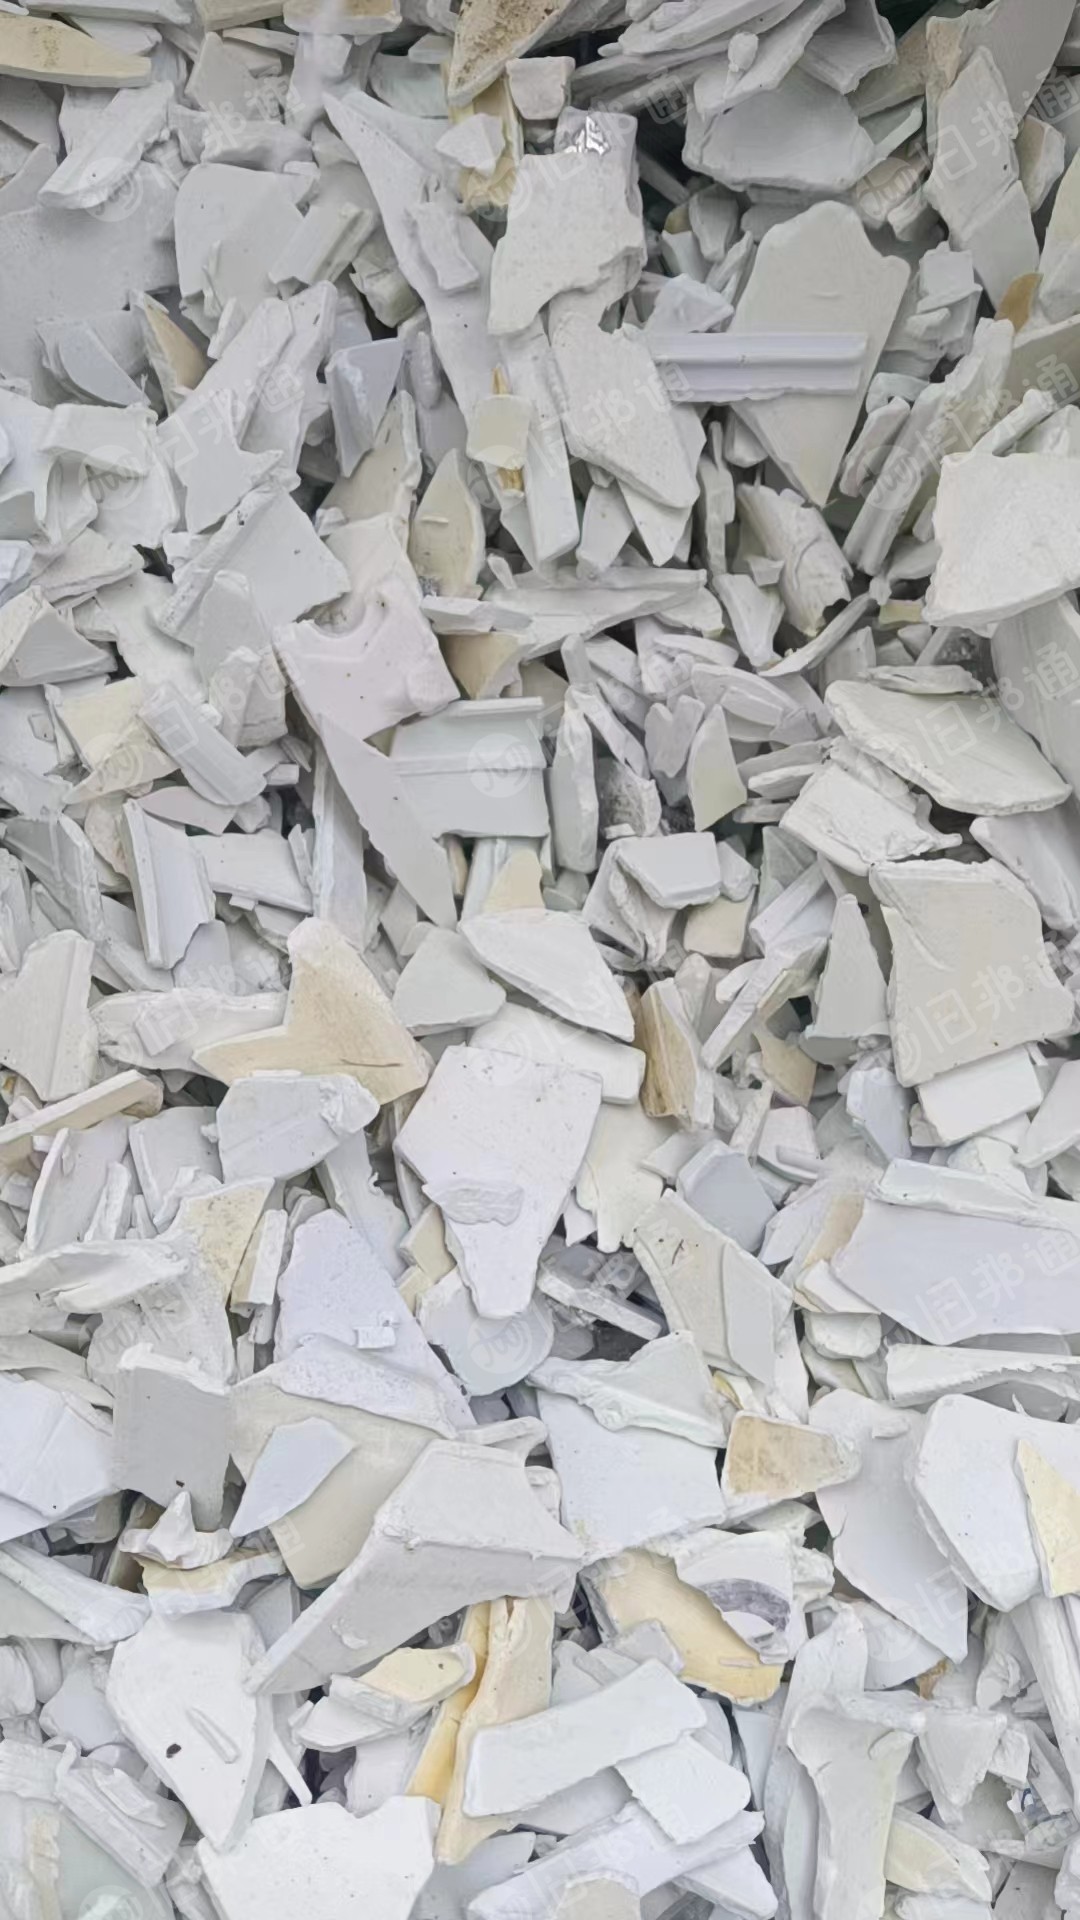 硬质PVC白钢破碎料，PVC护墙板破碎料、扣板破碎料 、PVC三级料，PVC统管破碎料，长期出售